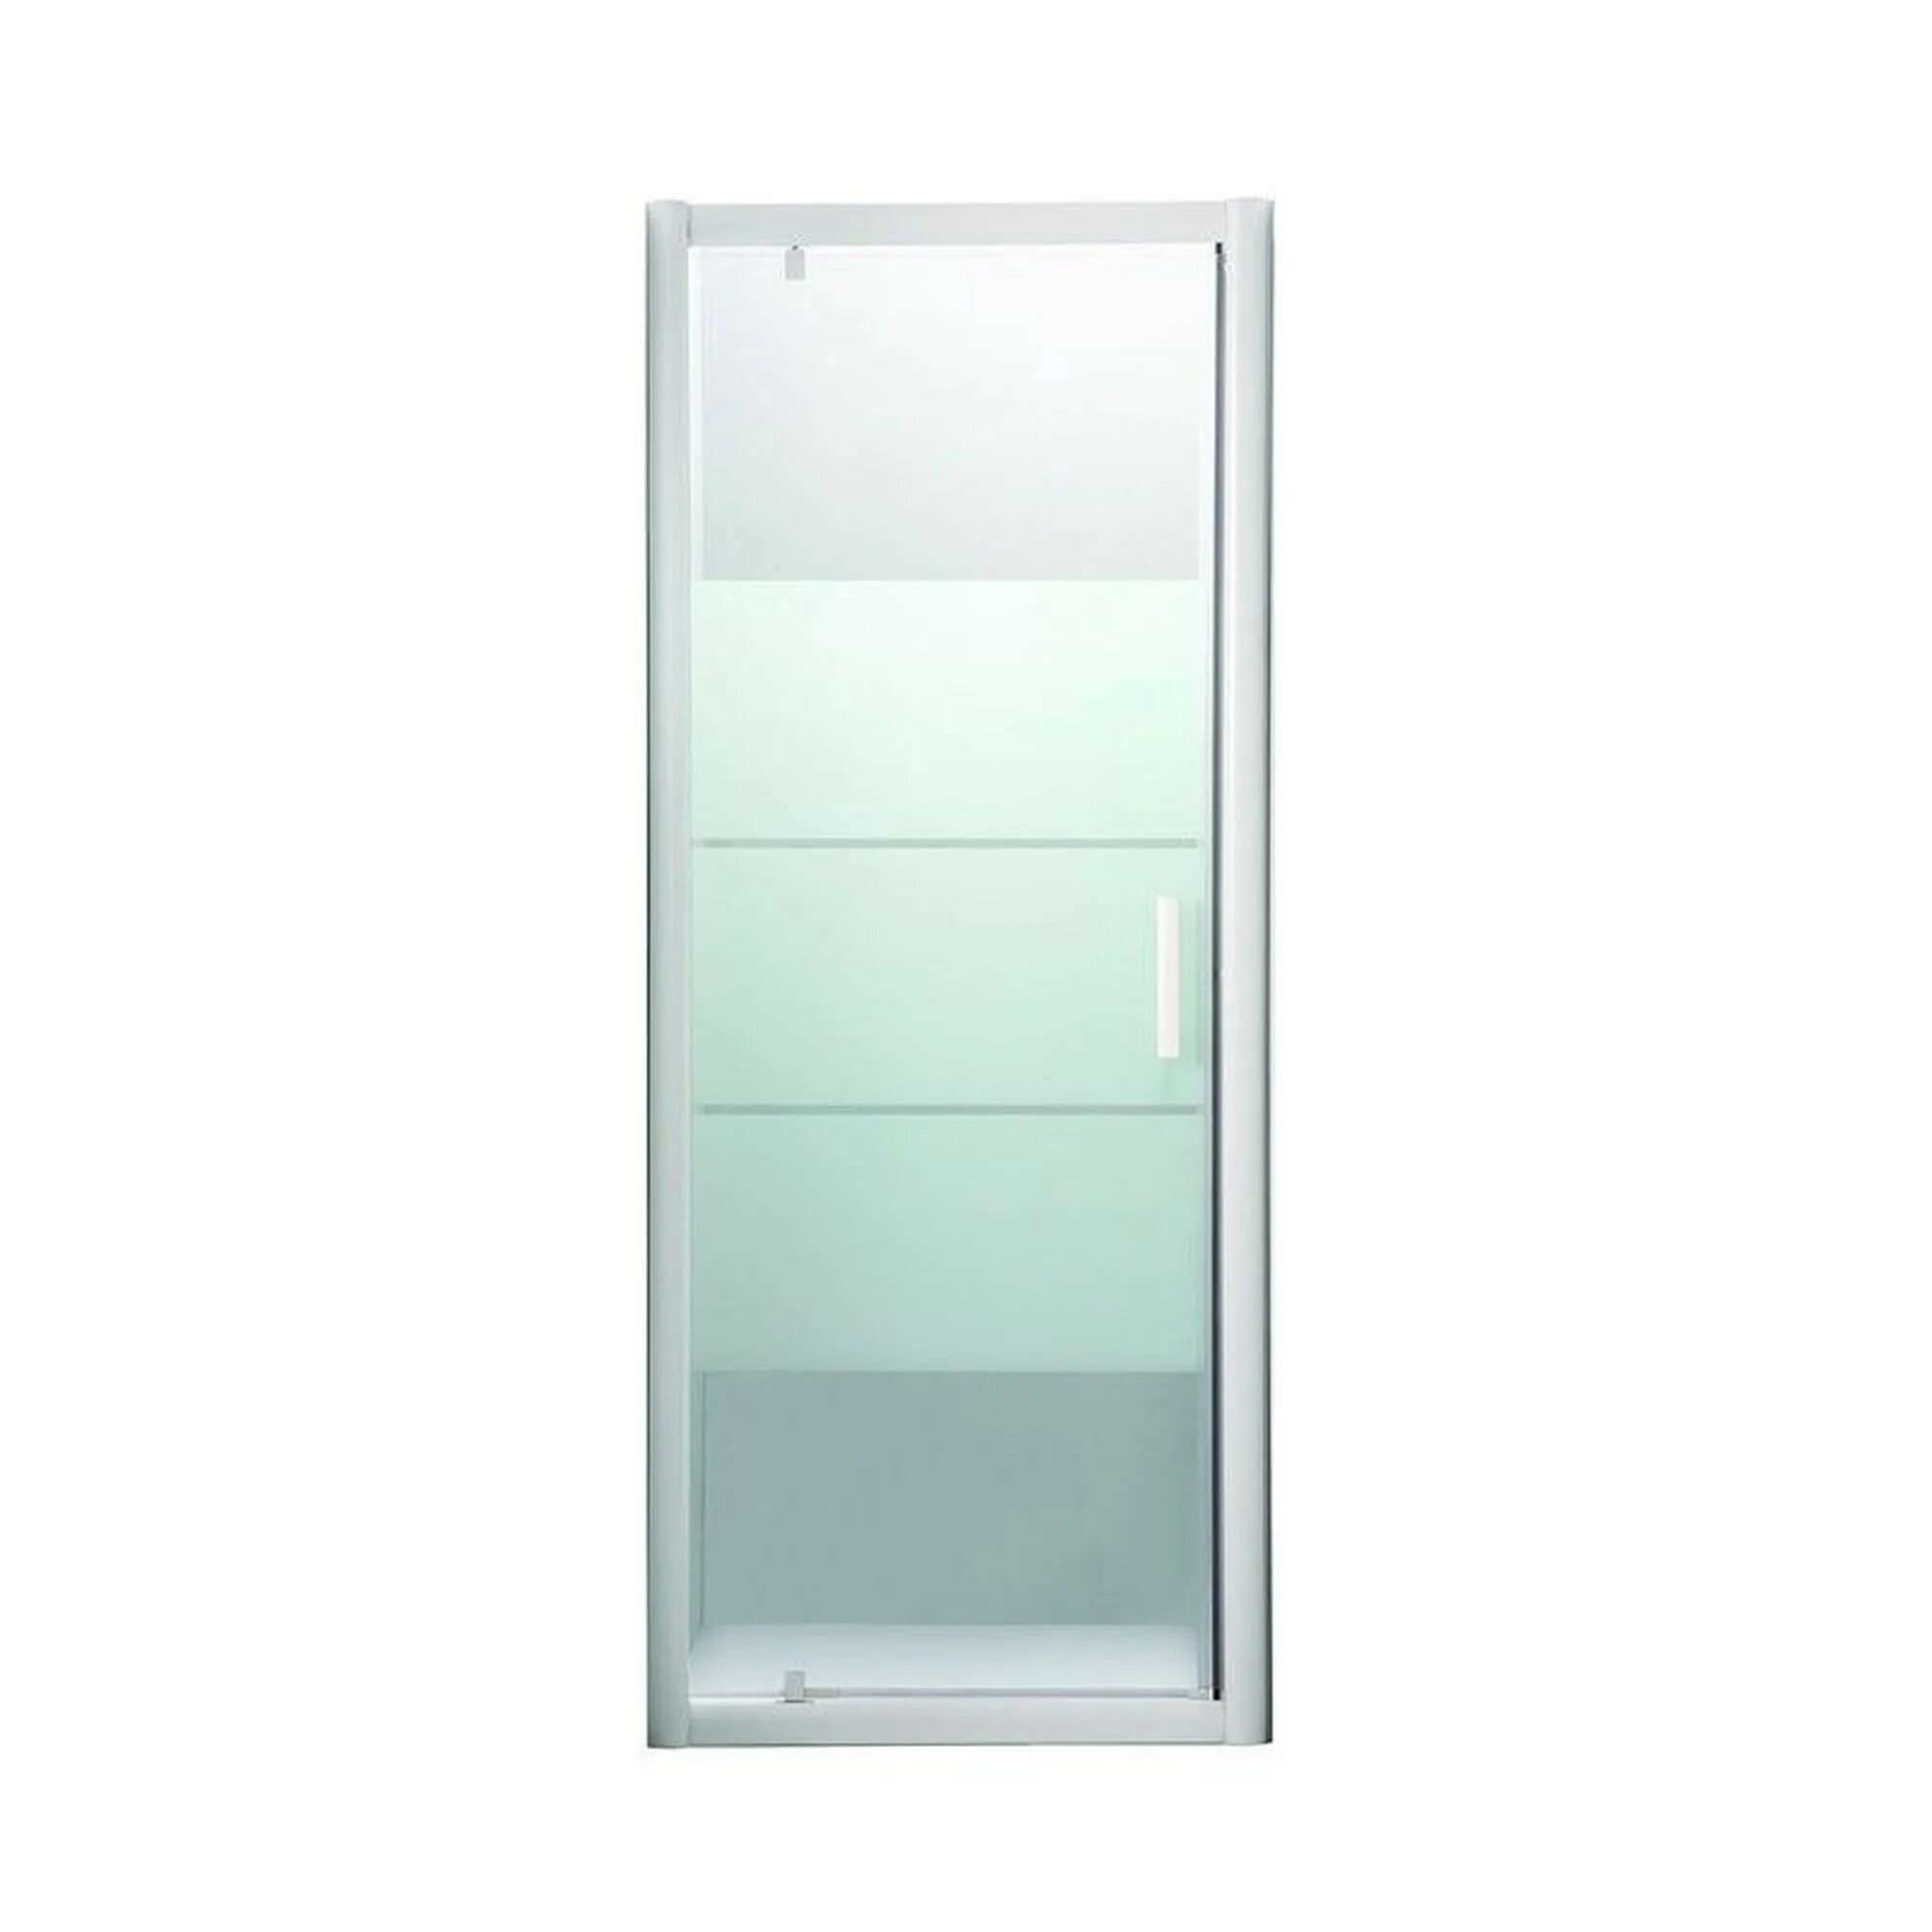 Душевая дверь Sensea Essential 100х185 см цвет хром. Душевая дверь Sensea Essential 90х185 см цвет белый. Optima 100х100х30 Novacart. Дверь душевая Triton слайд 120х185 см, белый профиль, стекло полосы. Душевая дверь мерлен